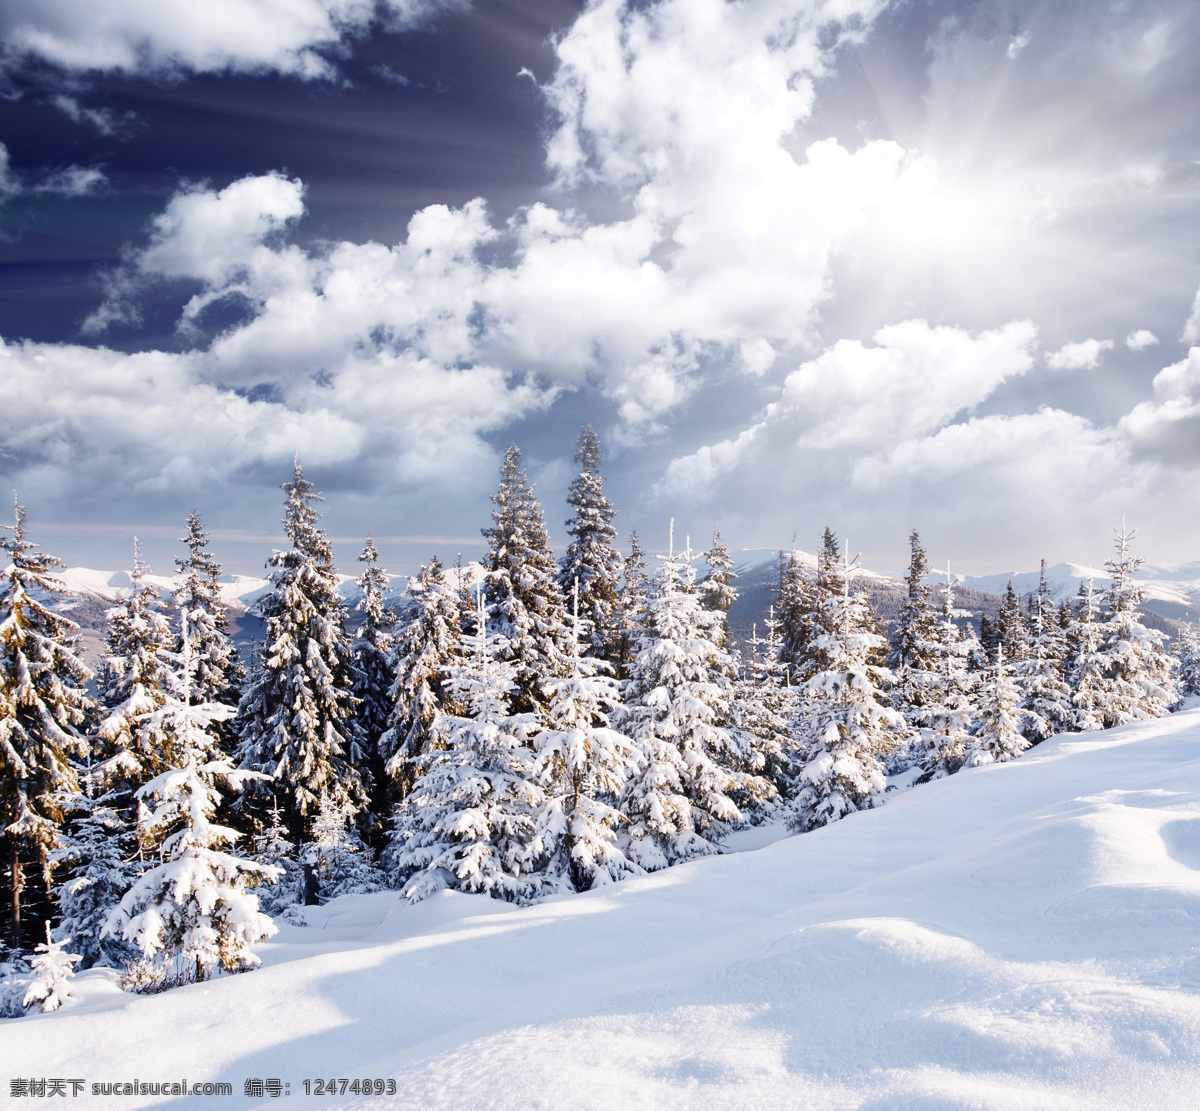 冬季 雪景 冬天 美丽风景 景色 美景 积雪 雪山 雪地 森林 雪景图片 风景图片